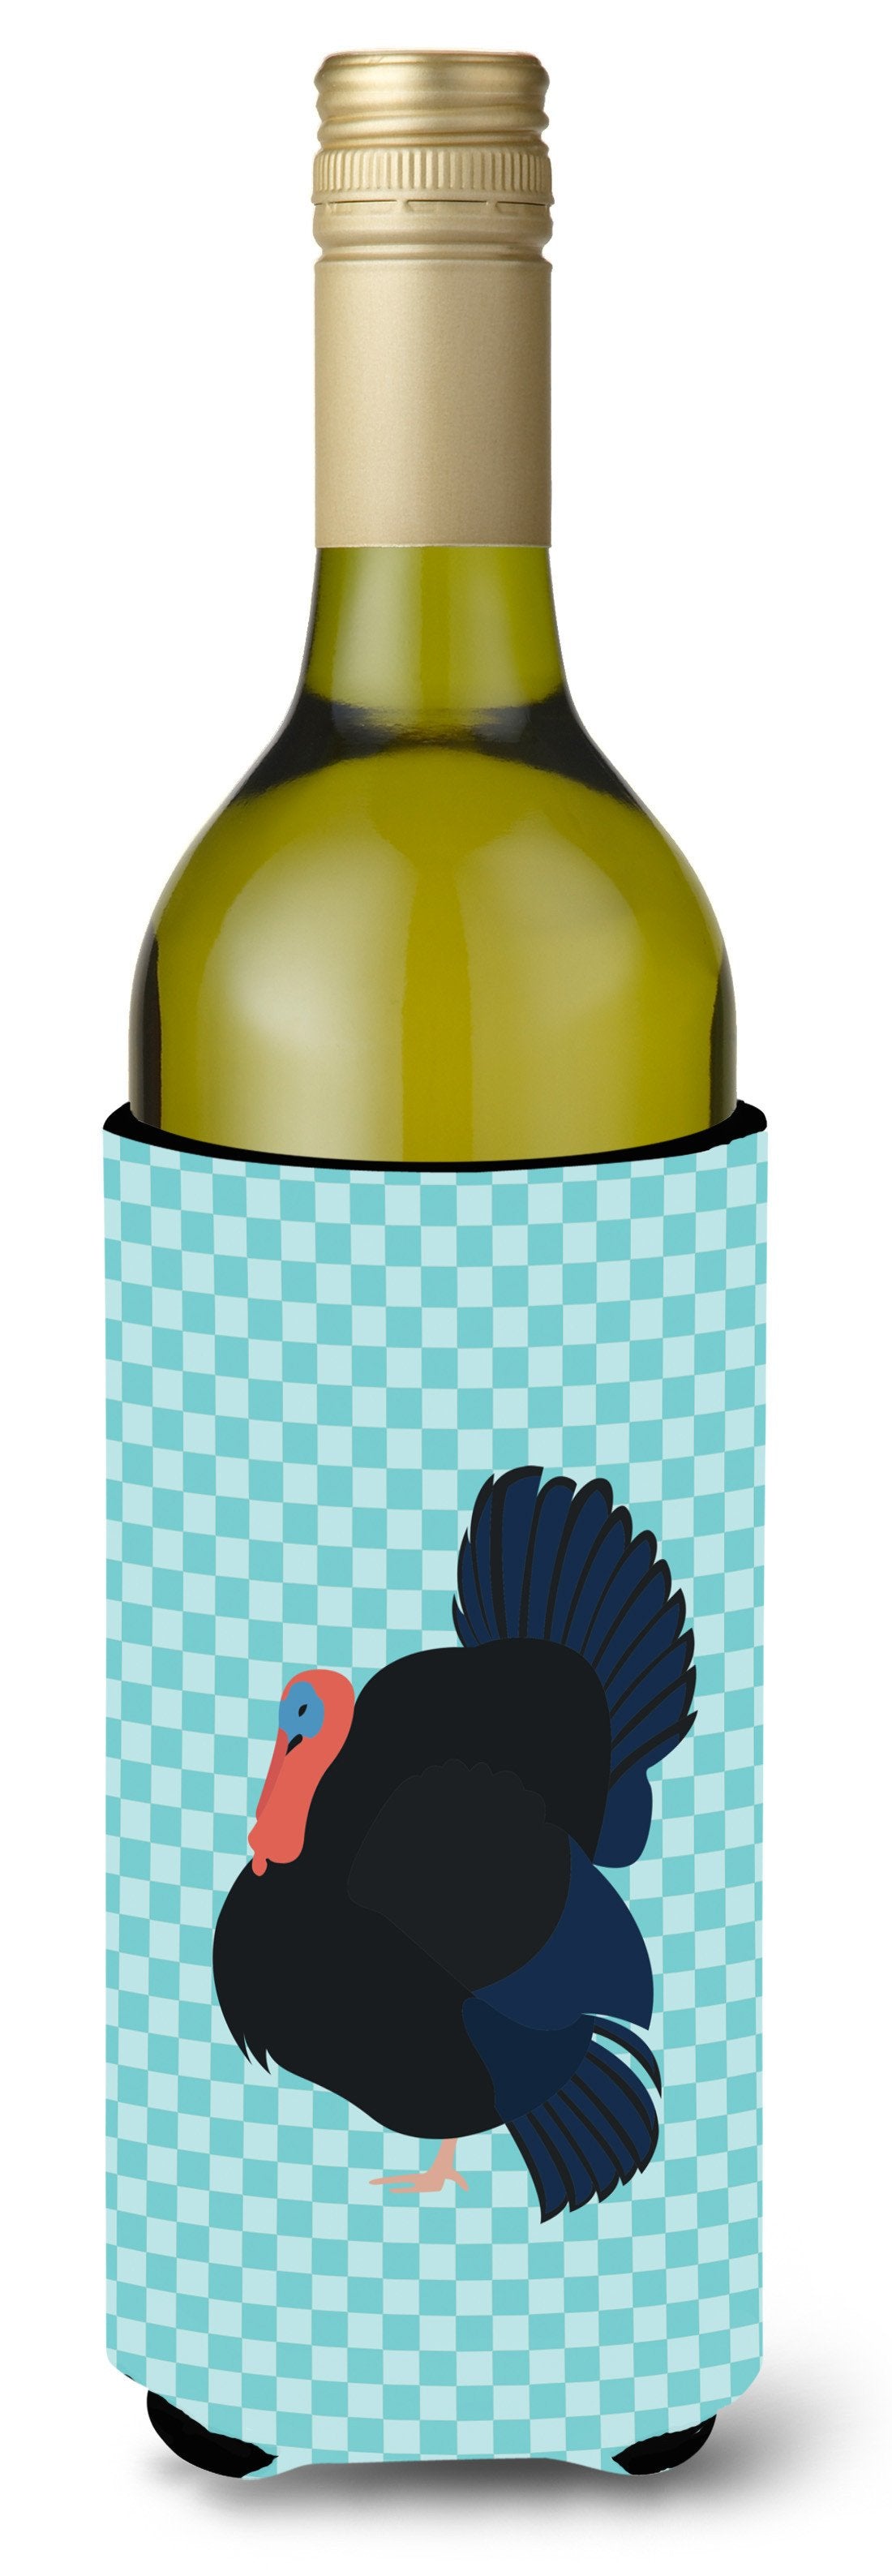 Norfolk Black Turkey Blue Check Wine Bottle Beverge Insulator Hugger BB8159LITERK by Caroline's Treasures